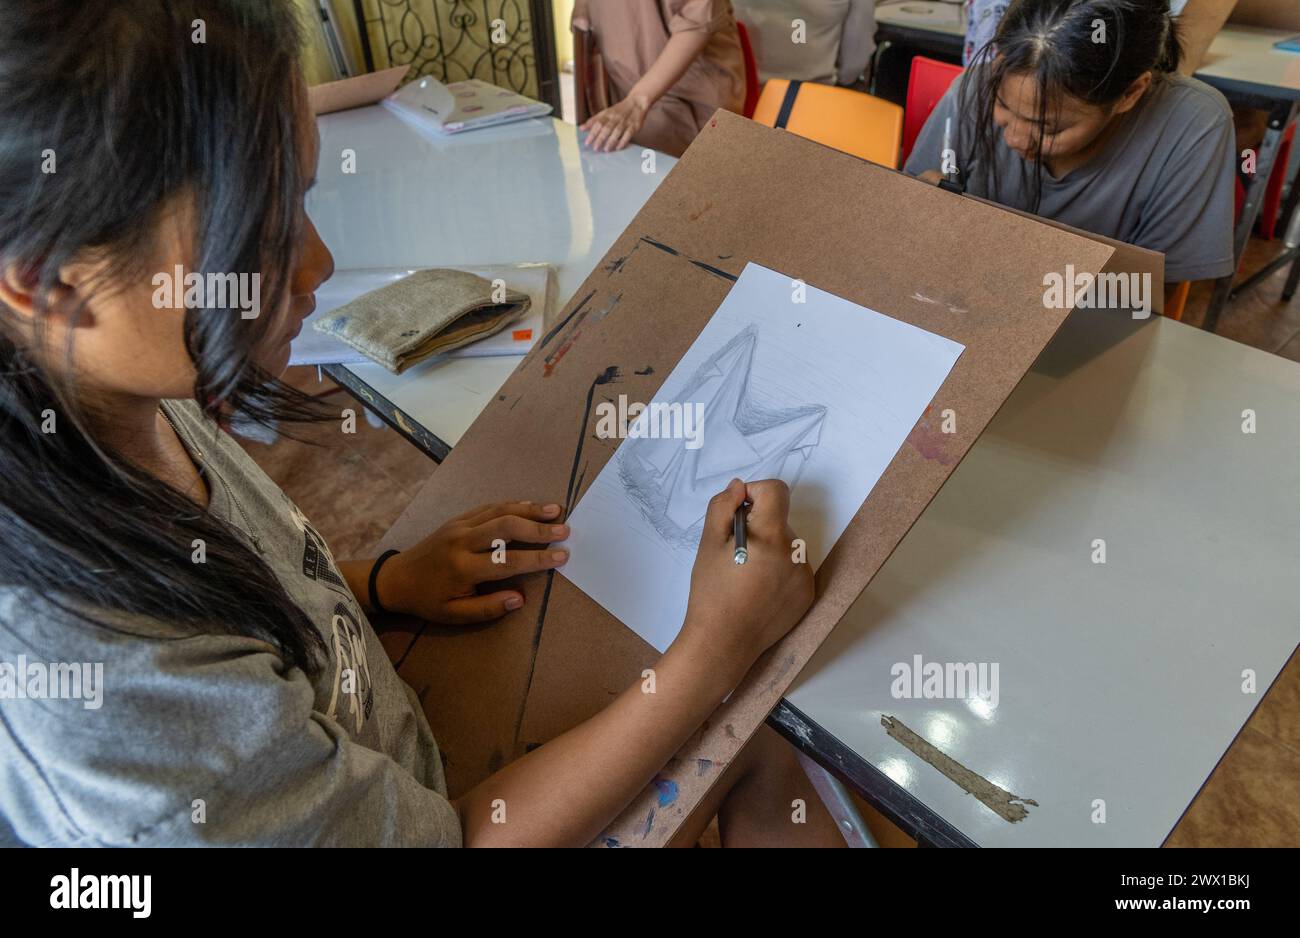 Burmesische Einwanderer aus der Region Karen Myanmar nehmen Kunstunterricht in einem Gemeindezentrum in Mae SOT, Thailand Stockfoto